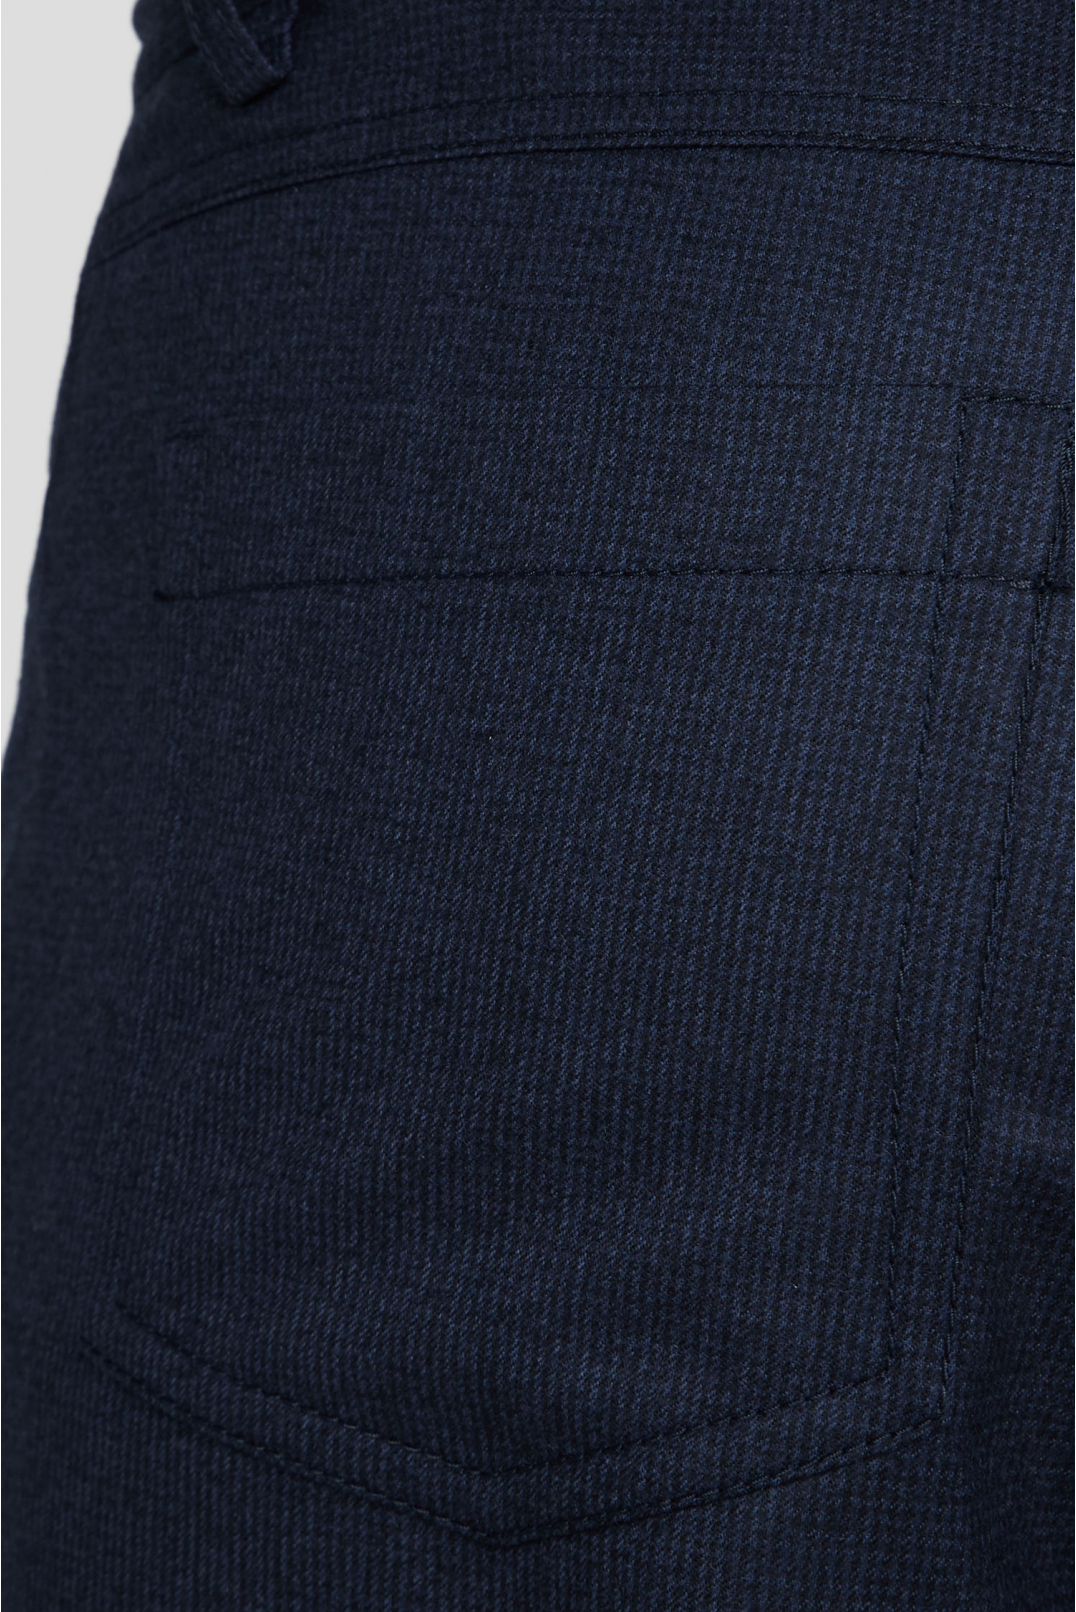 Мужские темно-синие шерстяные брюки с узором - 4